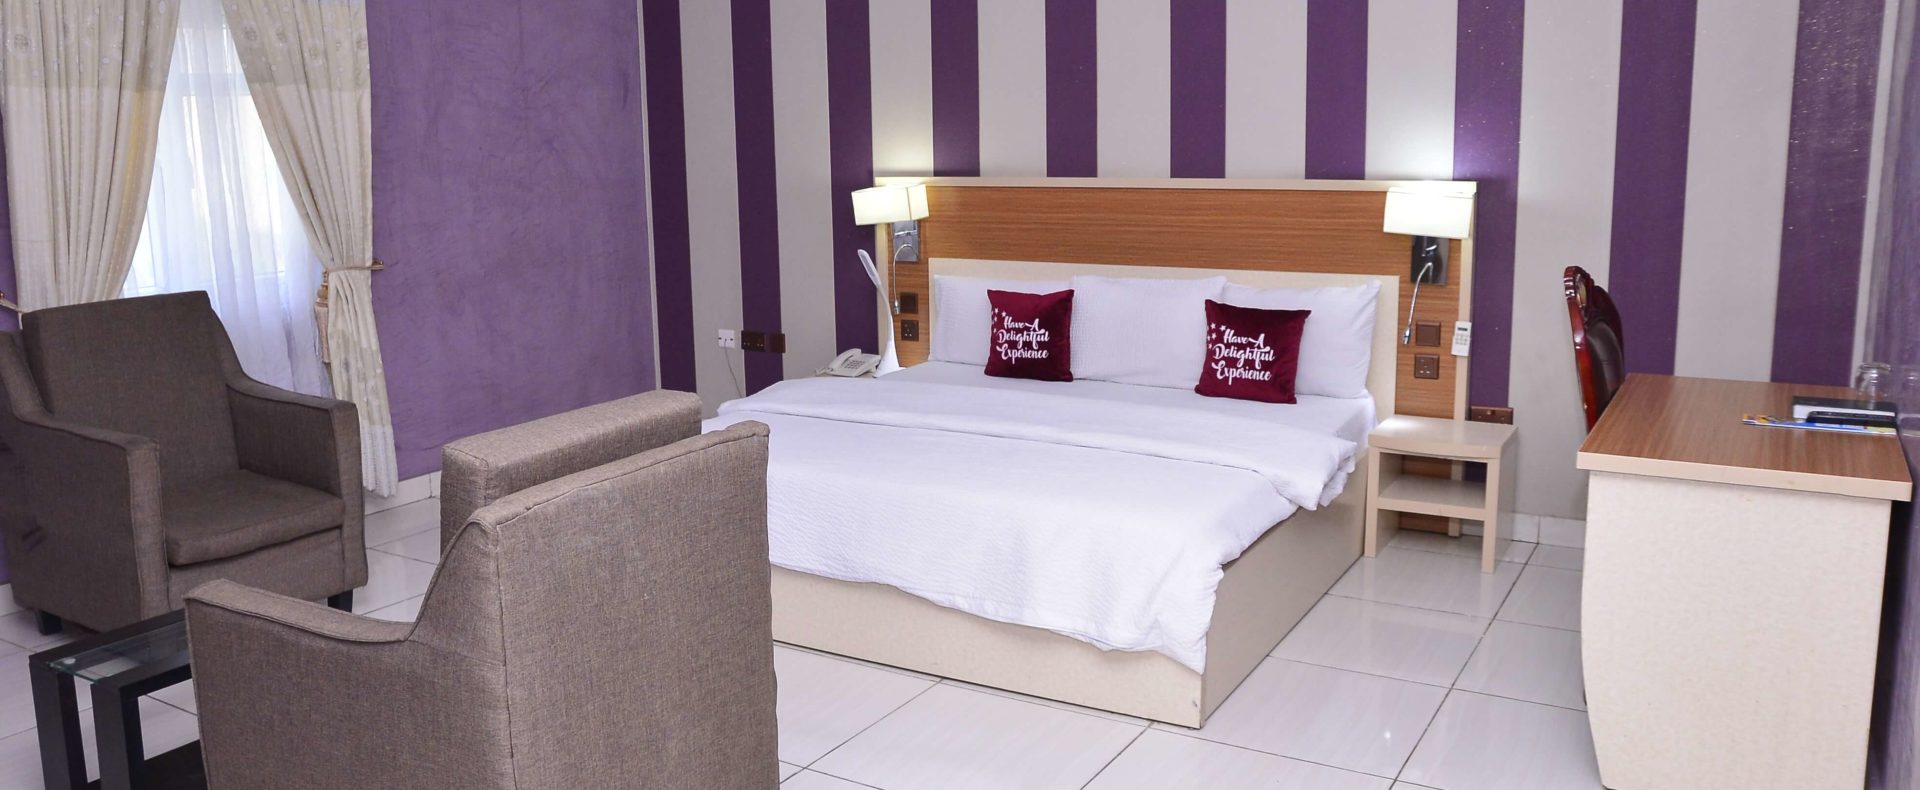 Hotel Executive Room In Ilawe Ekiti Nigeria